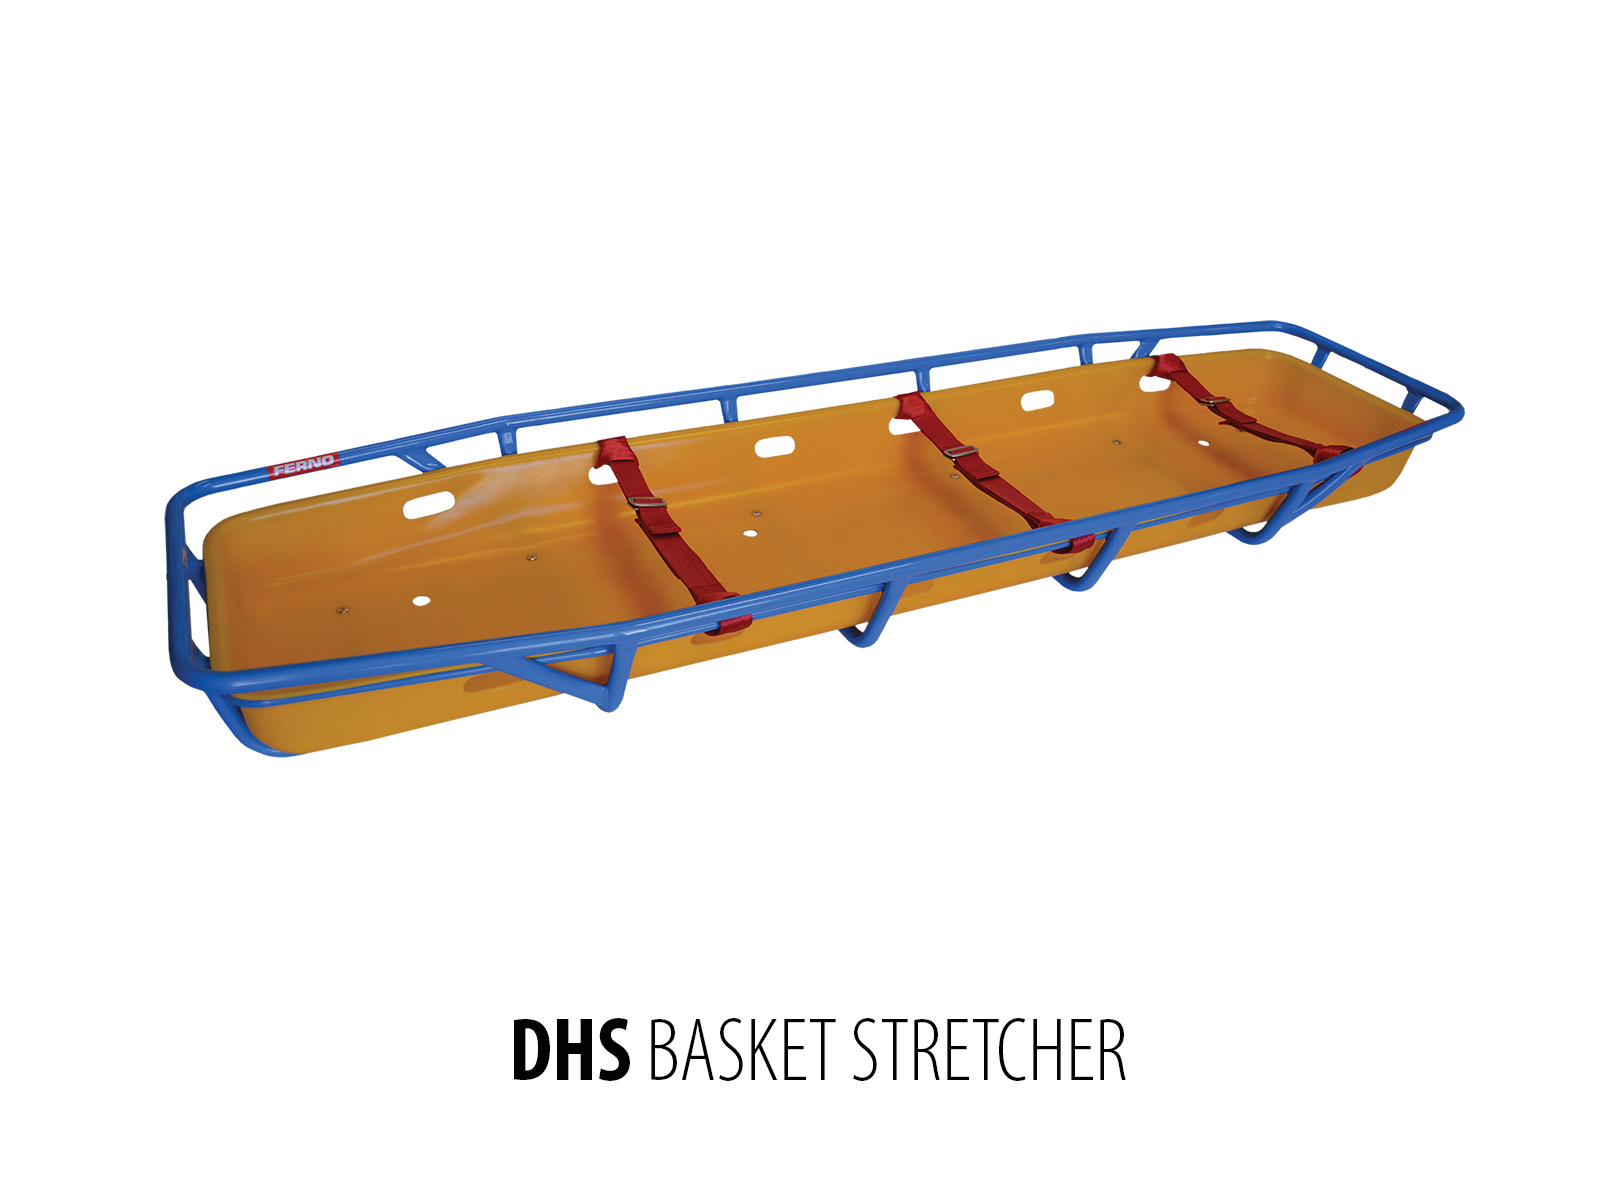 DHS-Basket-Stretcher-DHS-309-7.jpg